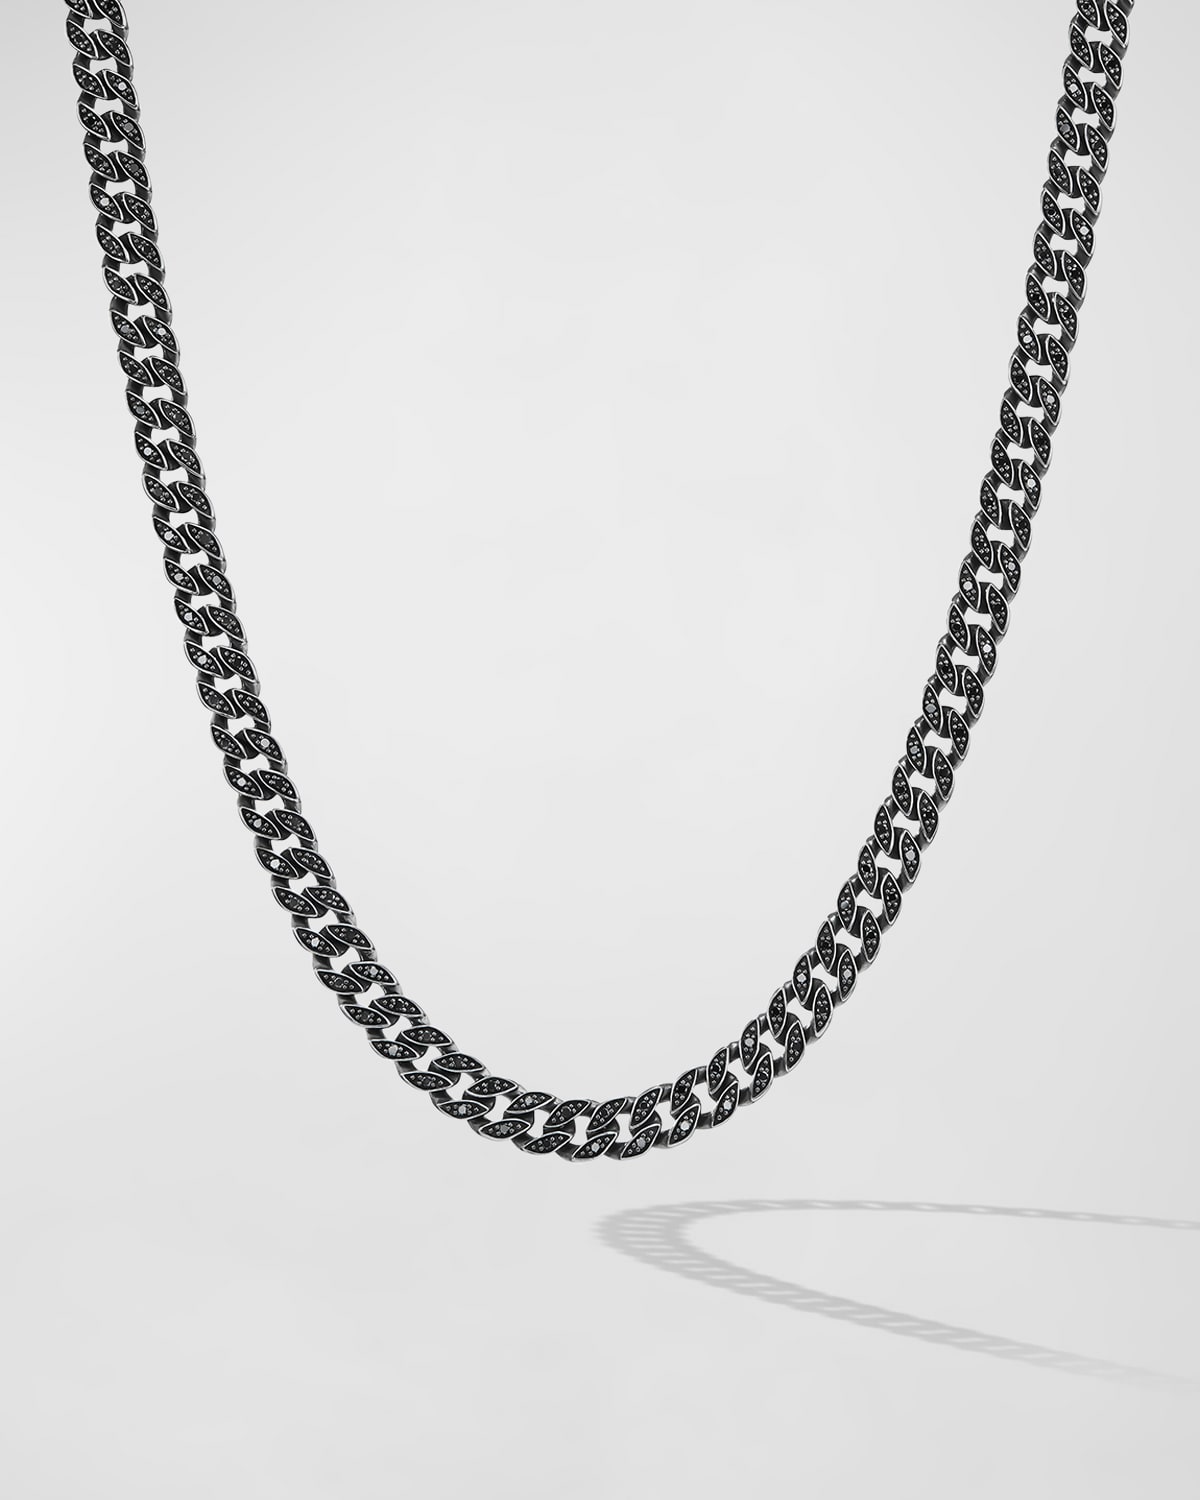 David Yurman Men's Curb Chain Necklace With Diamonds In Silver, 6mm, 22"l In Black Diamond